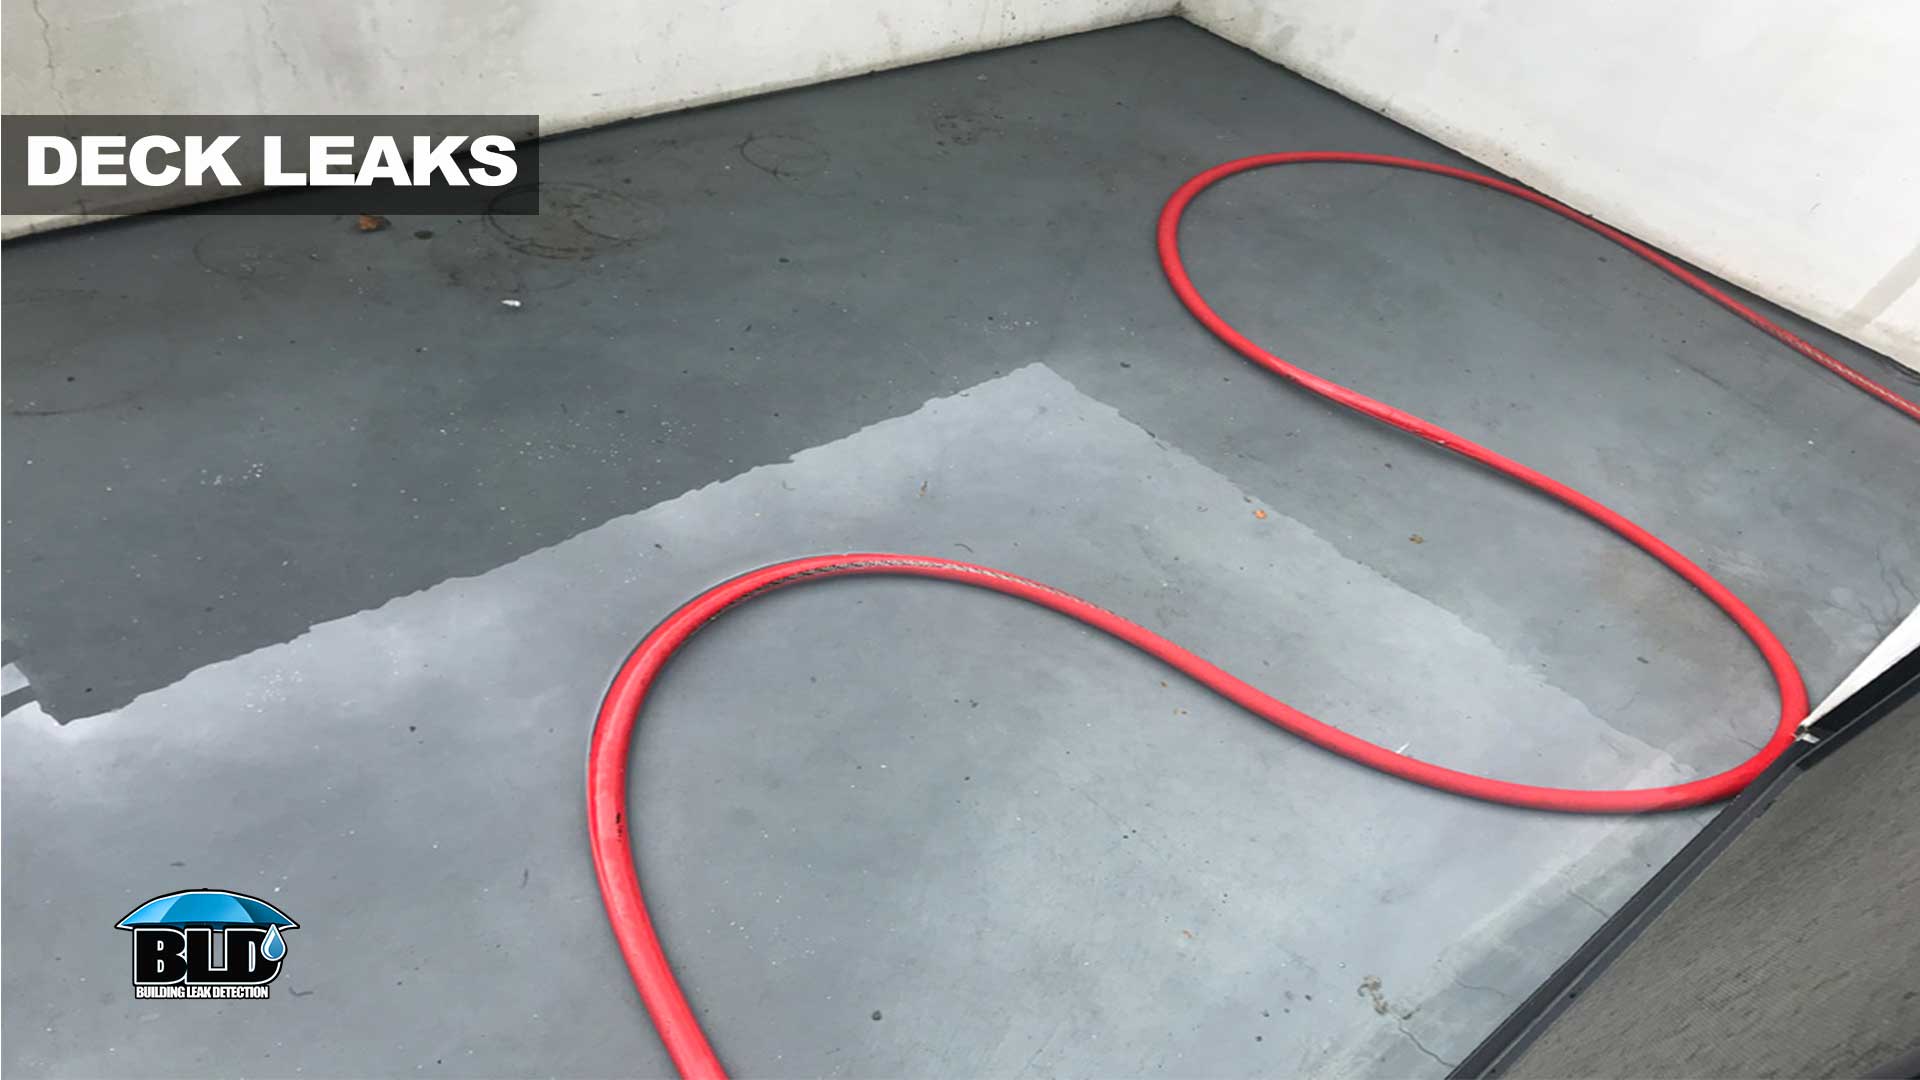 Deck leaks and rain leak detection in Los Angeles